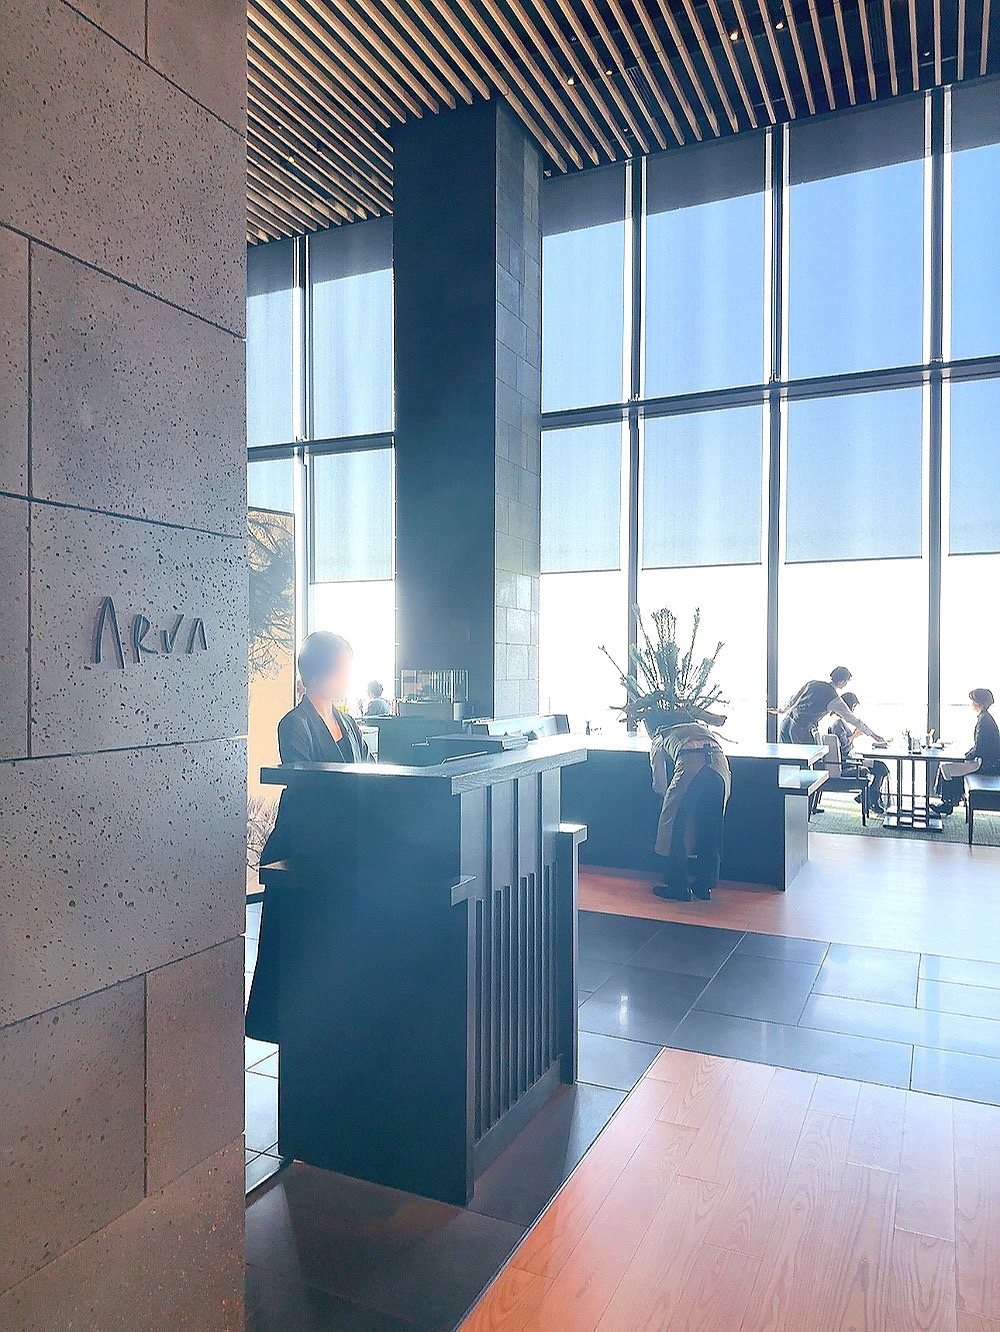 アマン東京レストラン『ARVA』入口